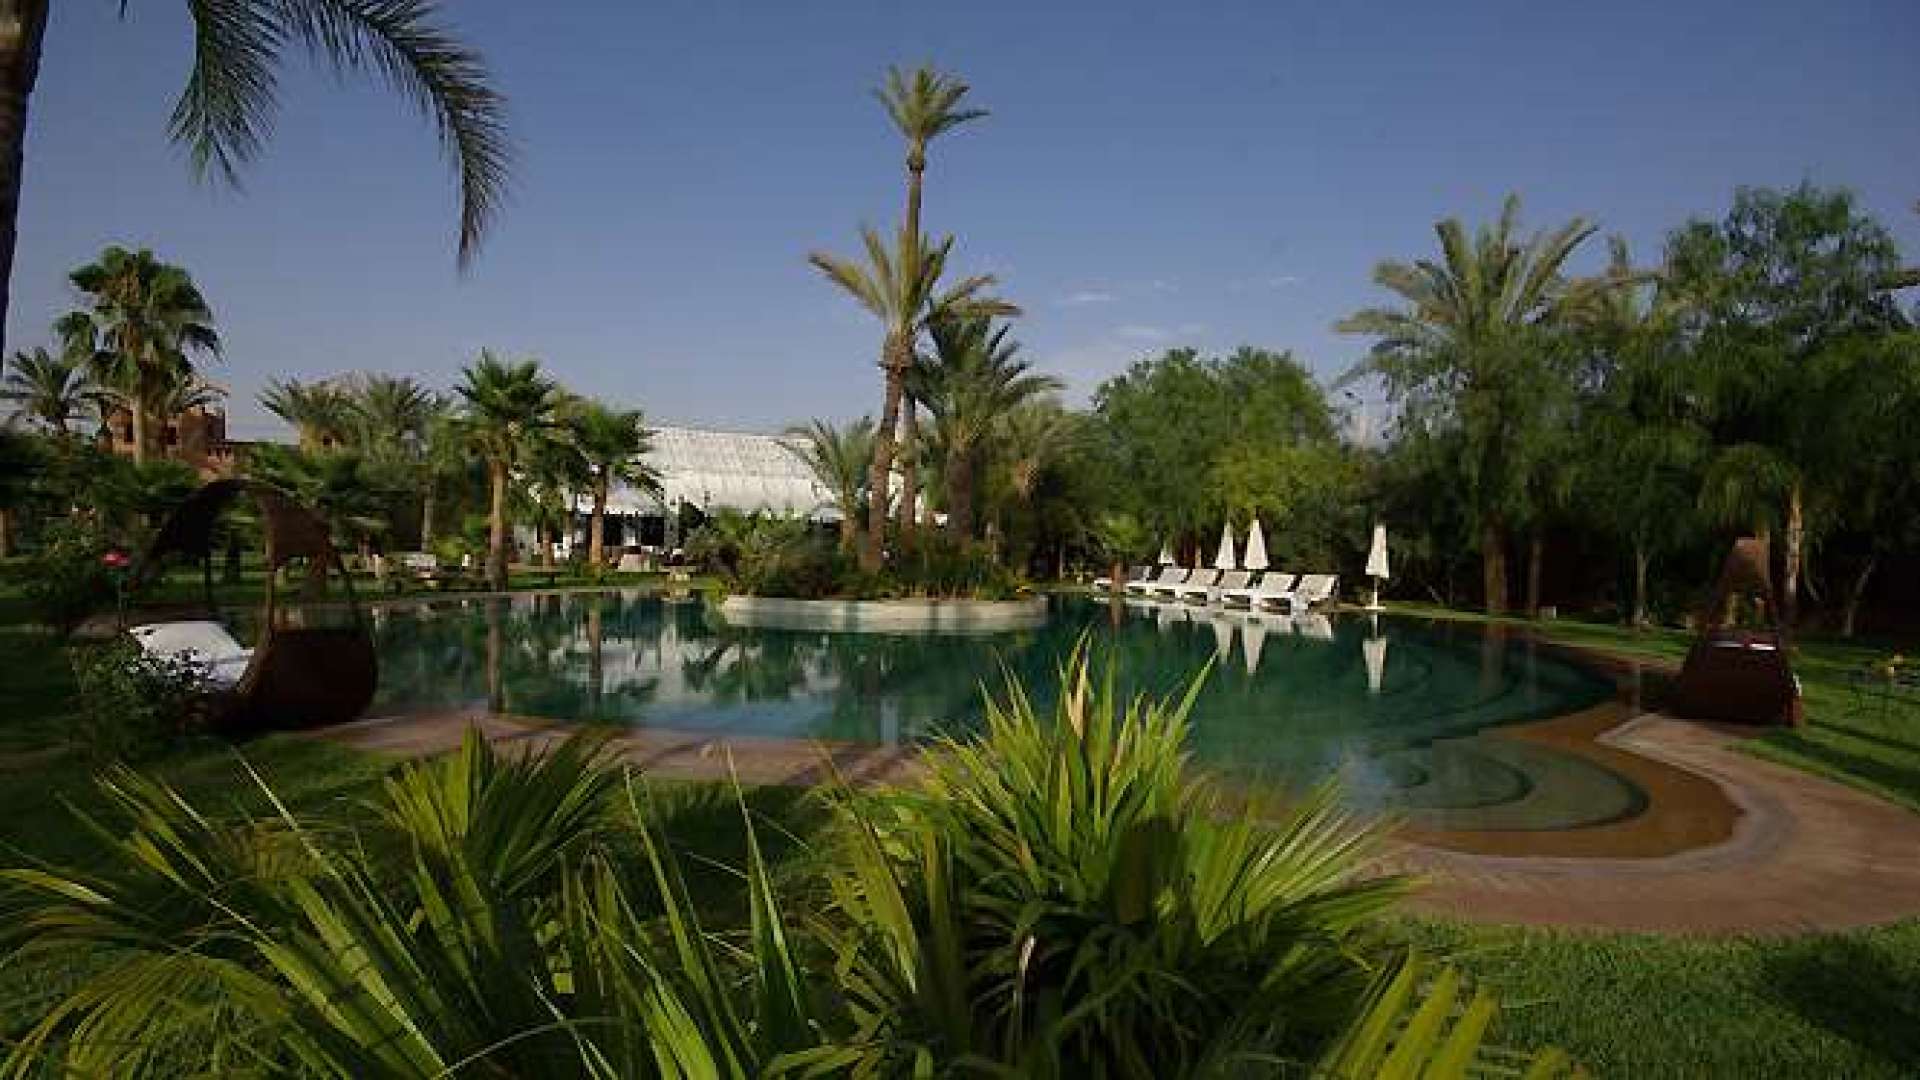 Location de vacances,Villa,Villa de luxe avec 8 lodges exceptionnelles à la Palmeraie,Marrakech,Palmeraie